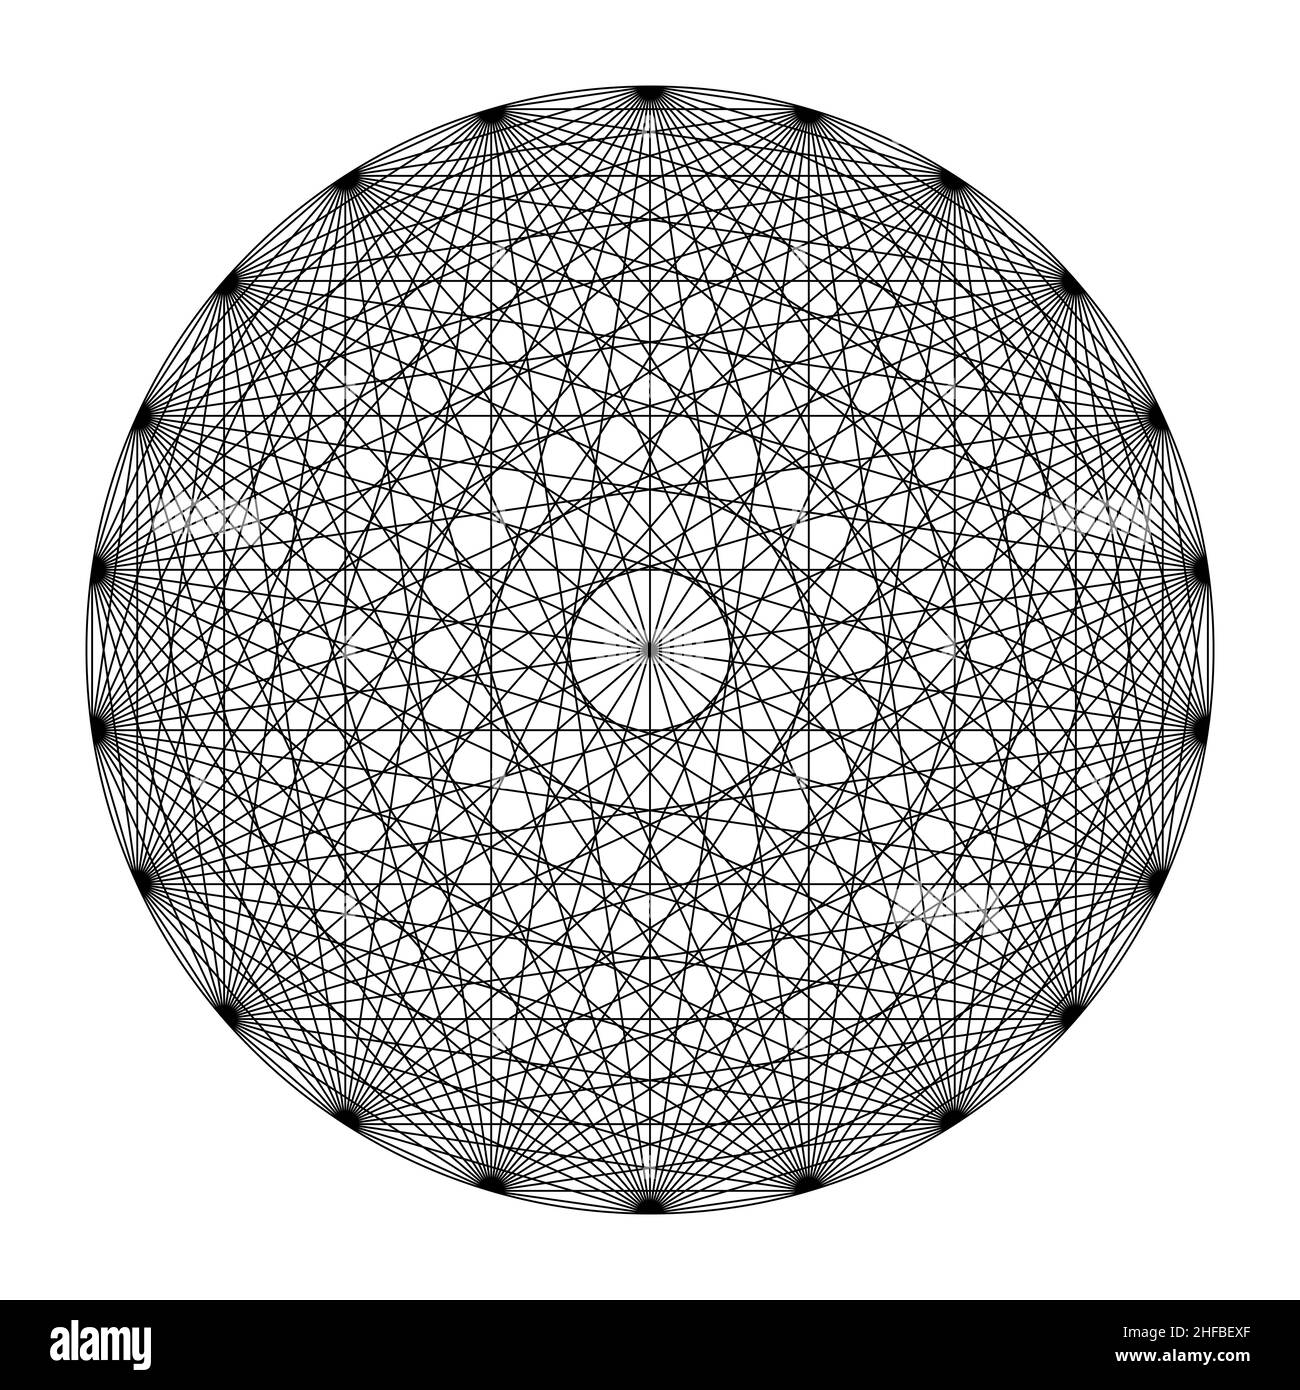 Cercle avec vingt-deux points, tous reliés par des lignes, montrant une symétrie de type mandala.Géométrie sacrée selon les 231 portes de G. Postel. Banque D'Images